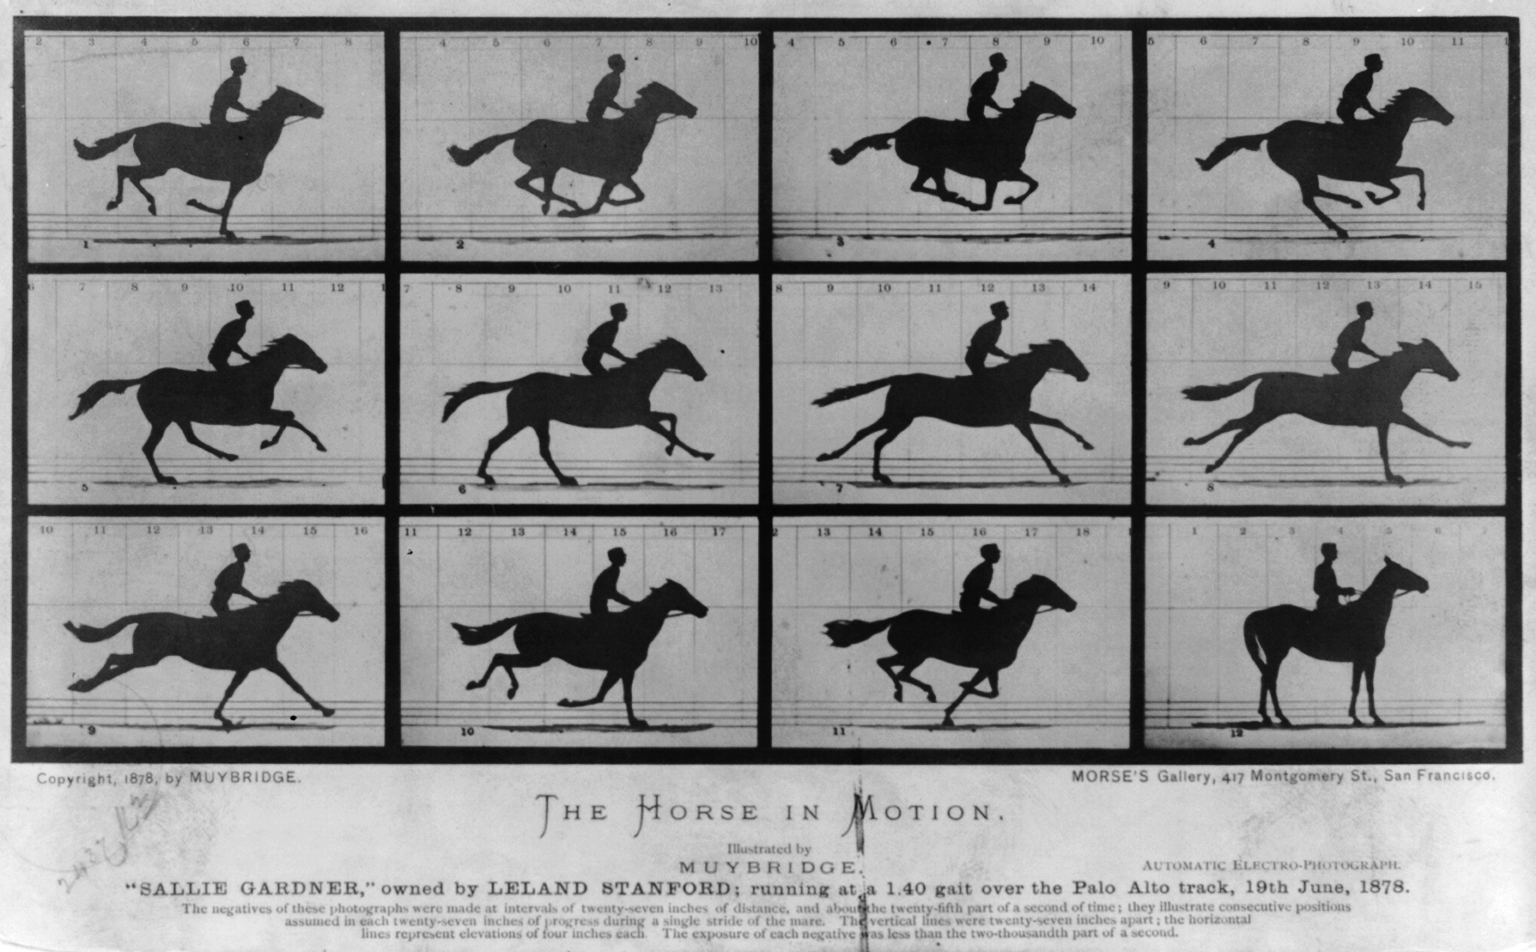 O Cavalo em Movimento. "Sallie Gardner," possuído por Leland Stanford; correndo a um passo de 1:40 na corrida de Palo Alto, 19 de Junho de 1878 by Eadweard Muybridge - 1878 